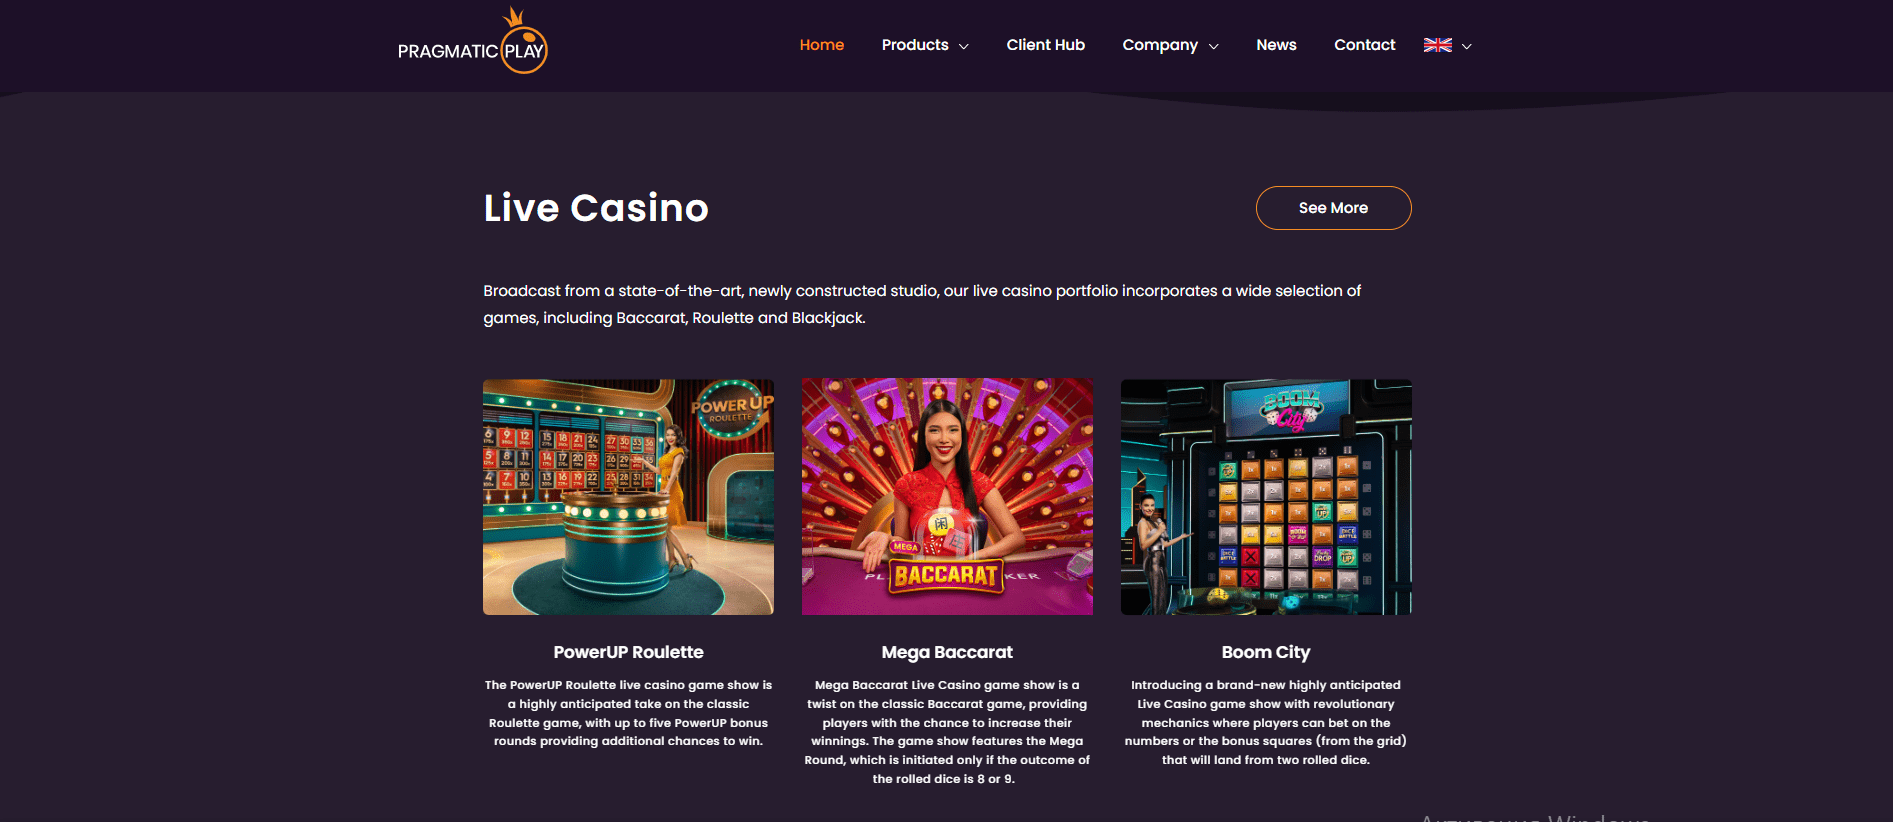 Pragmatic Play: Live Casino